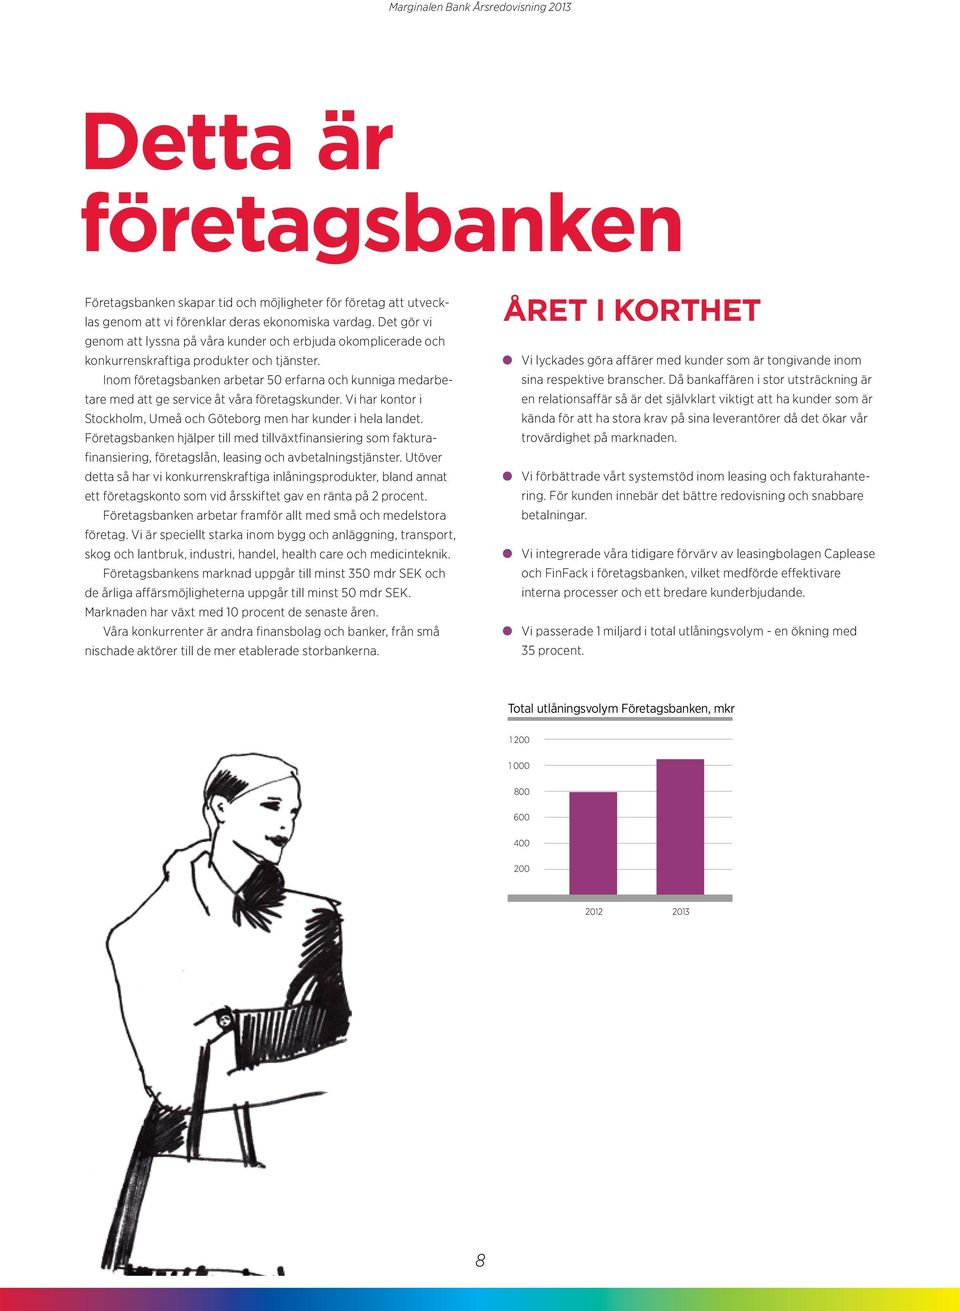 Inom företagsbanken arbetar 50 erfarna och kunniga medarbetare med att ge service åt våra företagskunder. Vi har kontor i Stockholm, Umeå och Göteborg men har kunder i hela landet.